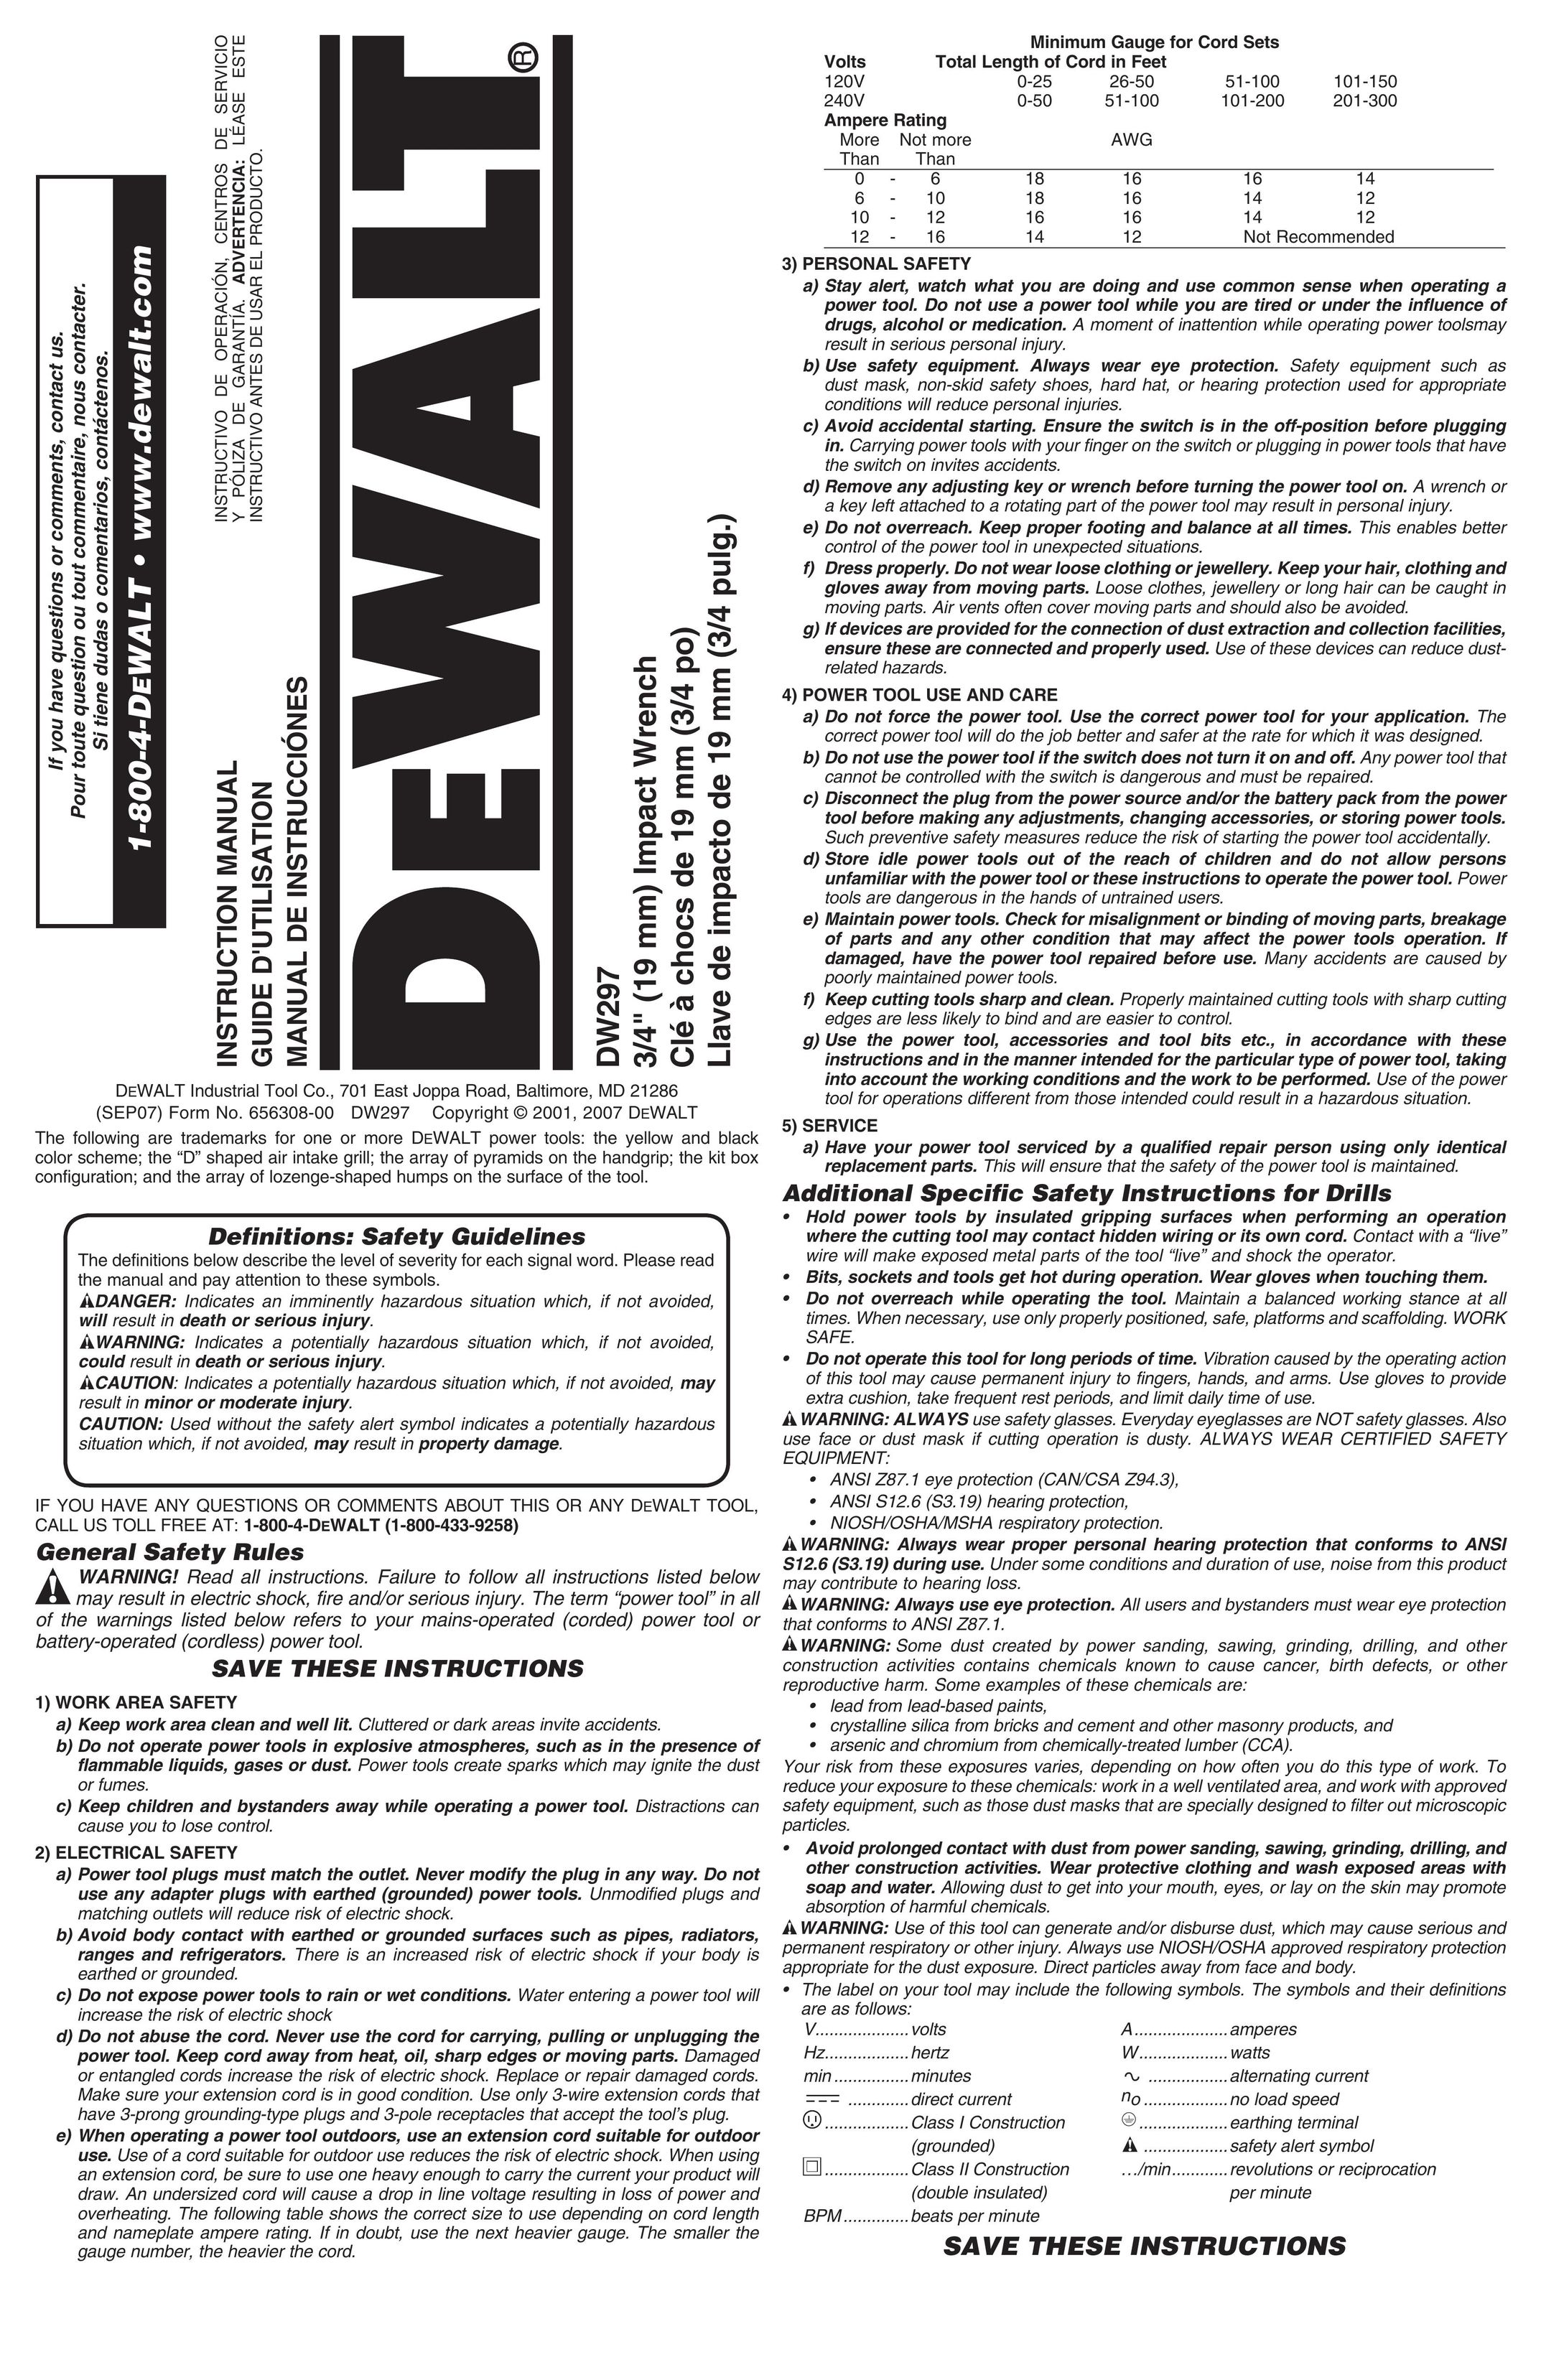 DeWalt DW297 Impact Driver User Manual